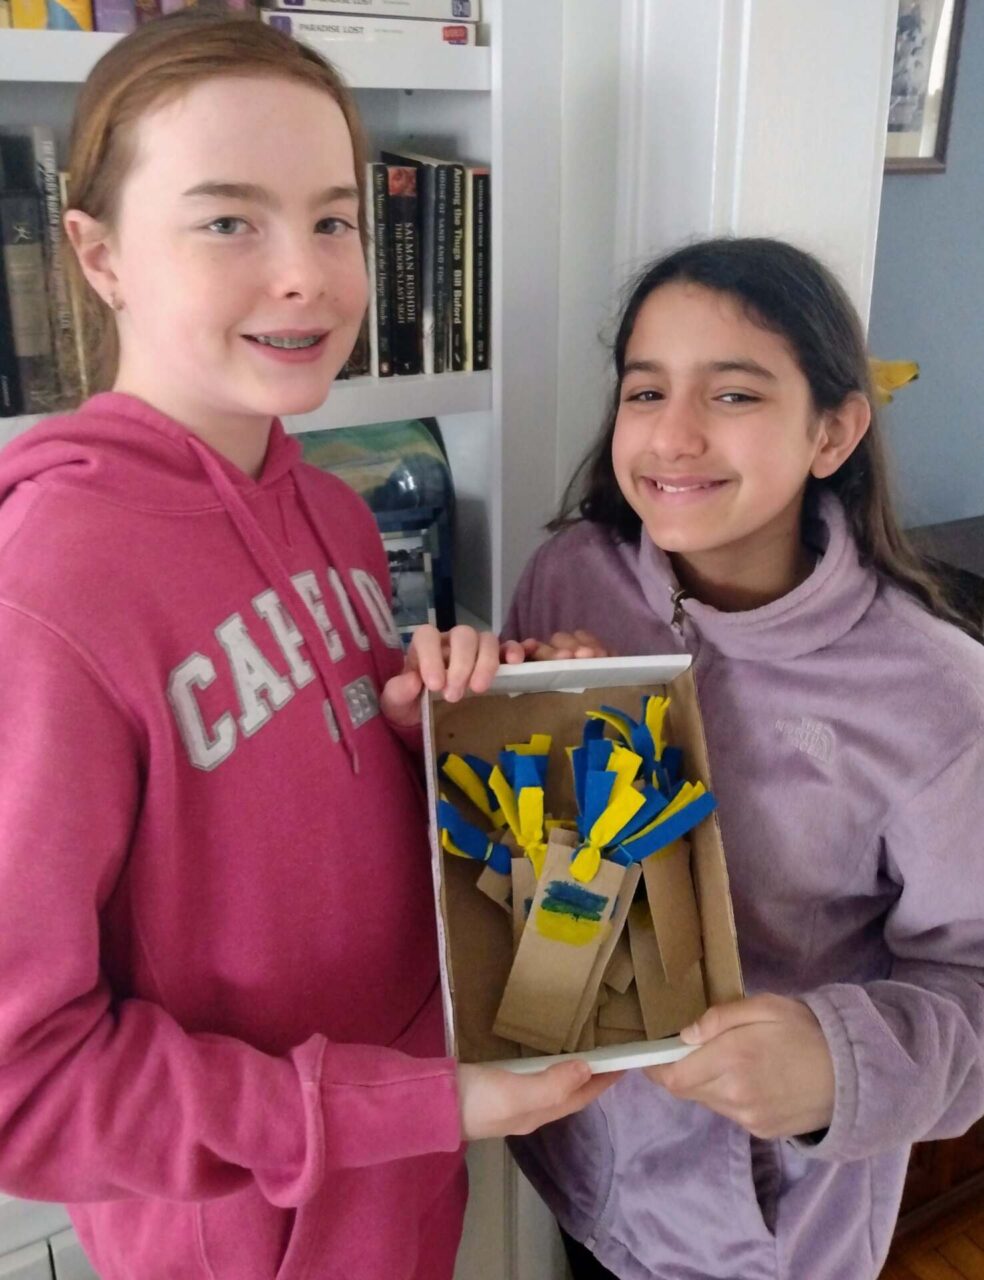 cranford nj girls, Cranford NJ Girls Sell Bookmarks to Raise Money For Ukrainian Refugees